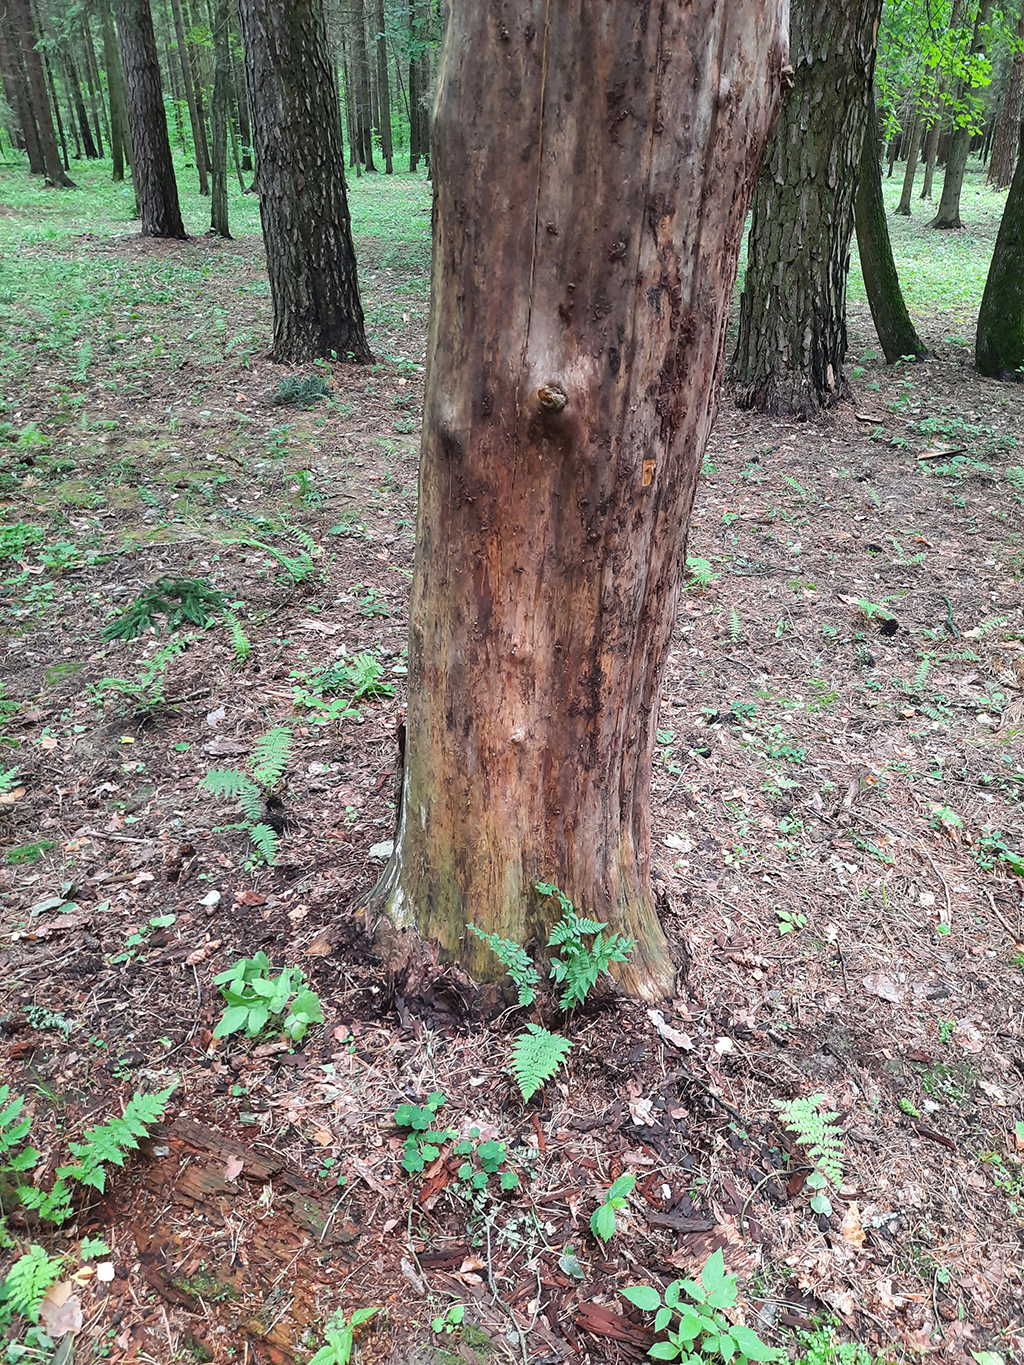 короед уничтожил всю кору хвойного дерева на участке в Балаково Саратовской области